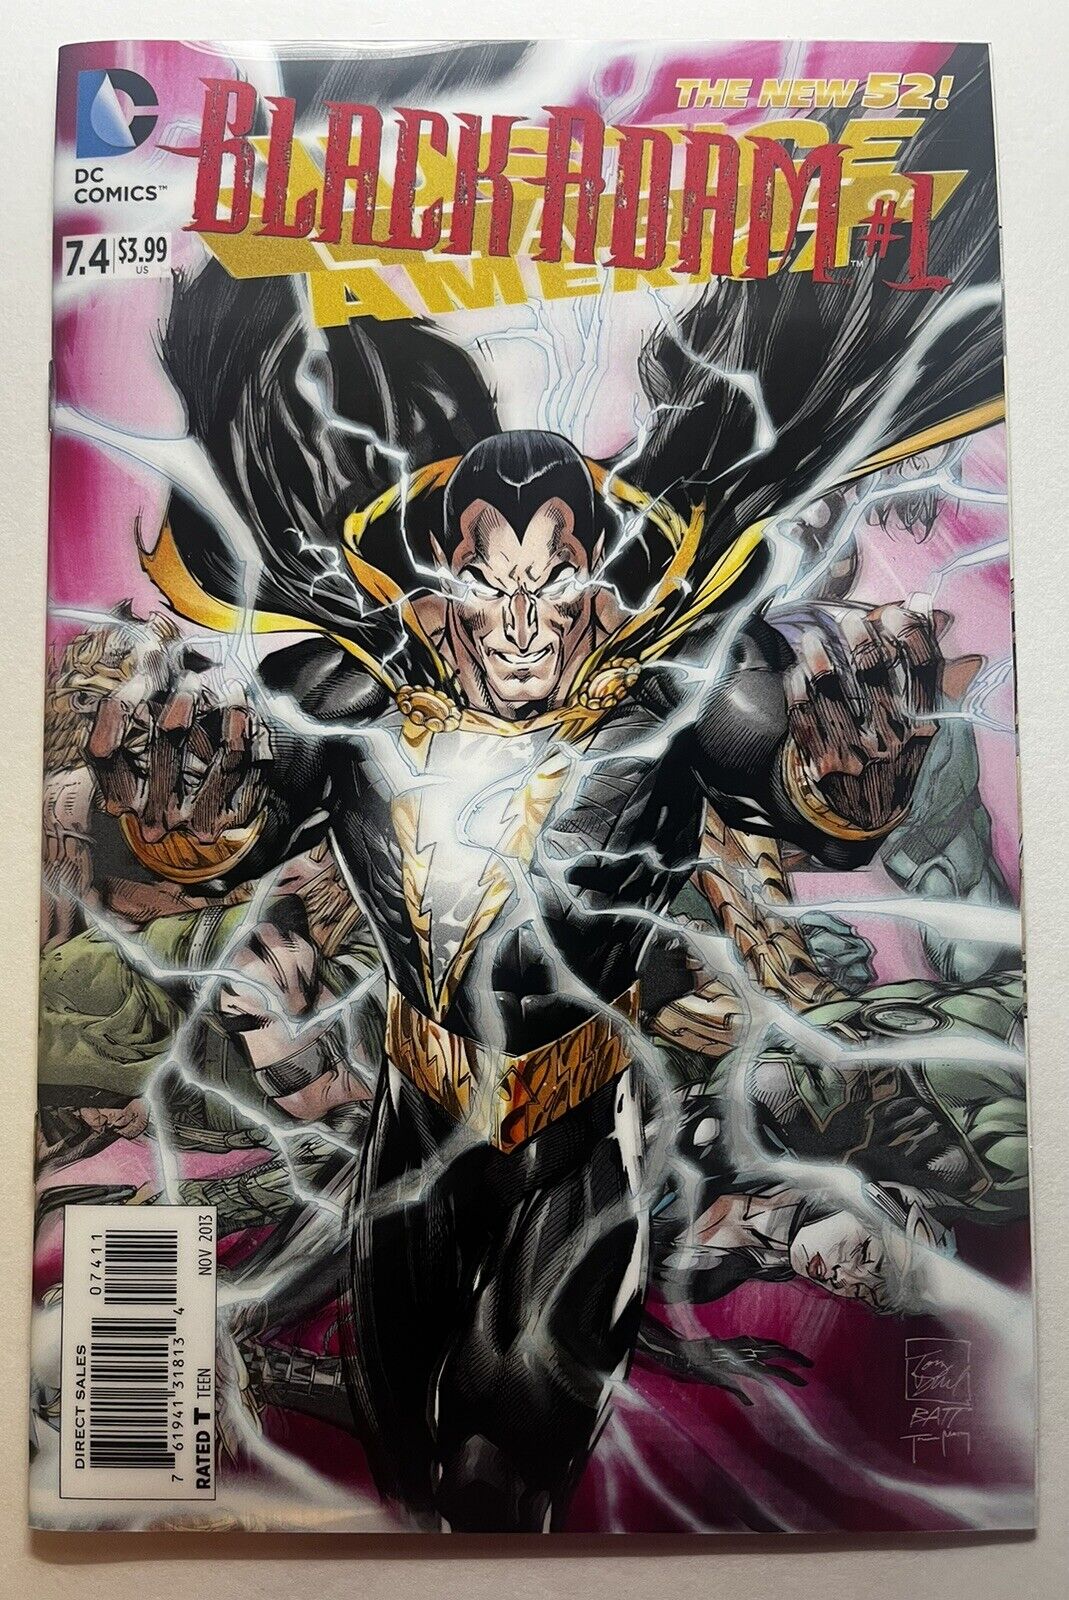 DC Justice League of America Full Color 3D Lenticular Cover Black Adam #1